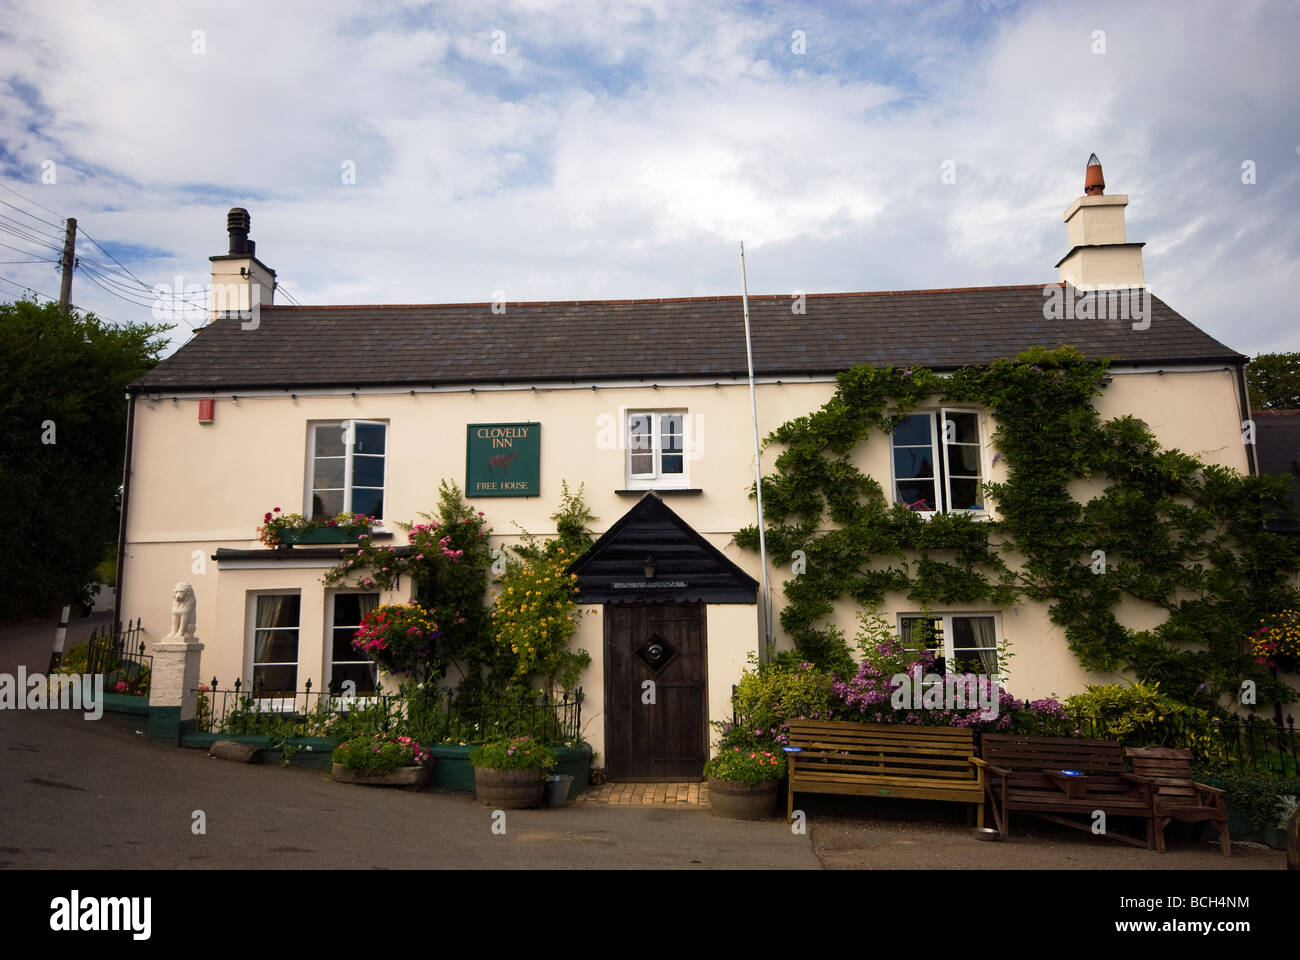 Clovelly Inn at Bratton Clovelly near Okehampton in Devon Stock Photo